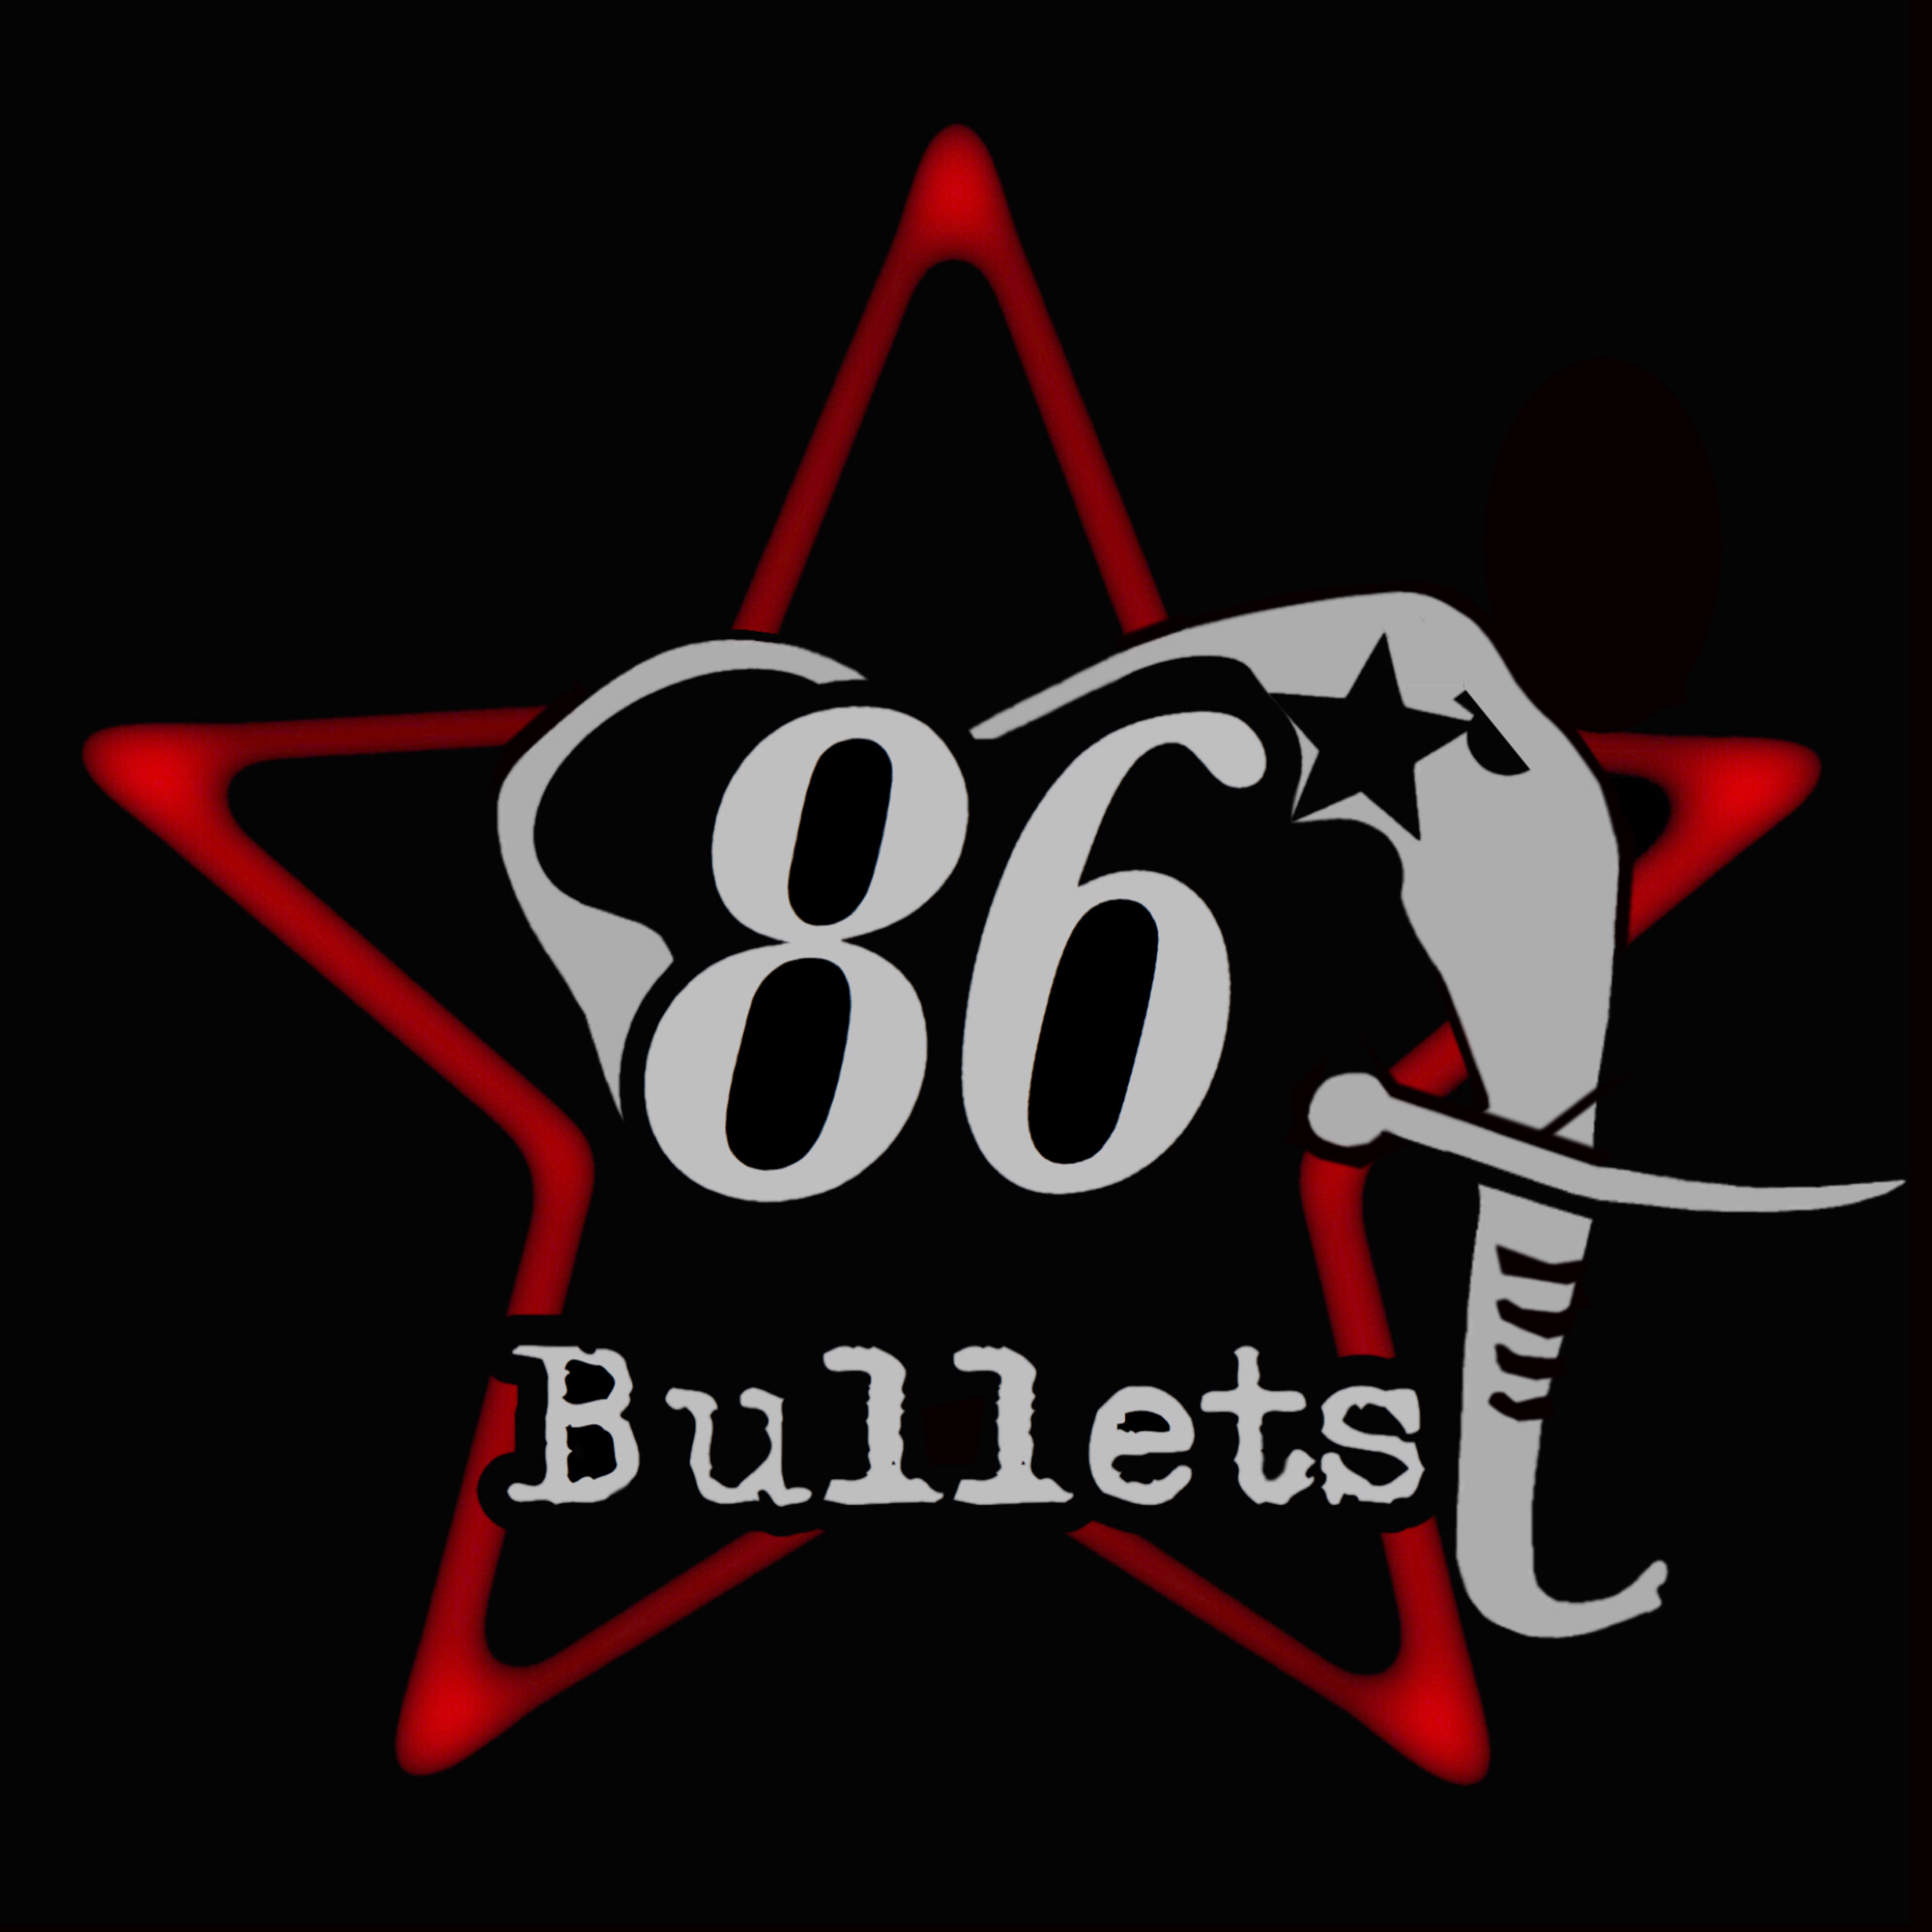 				86 Bullets				<br>				